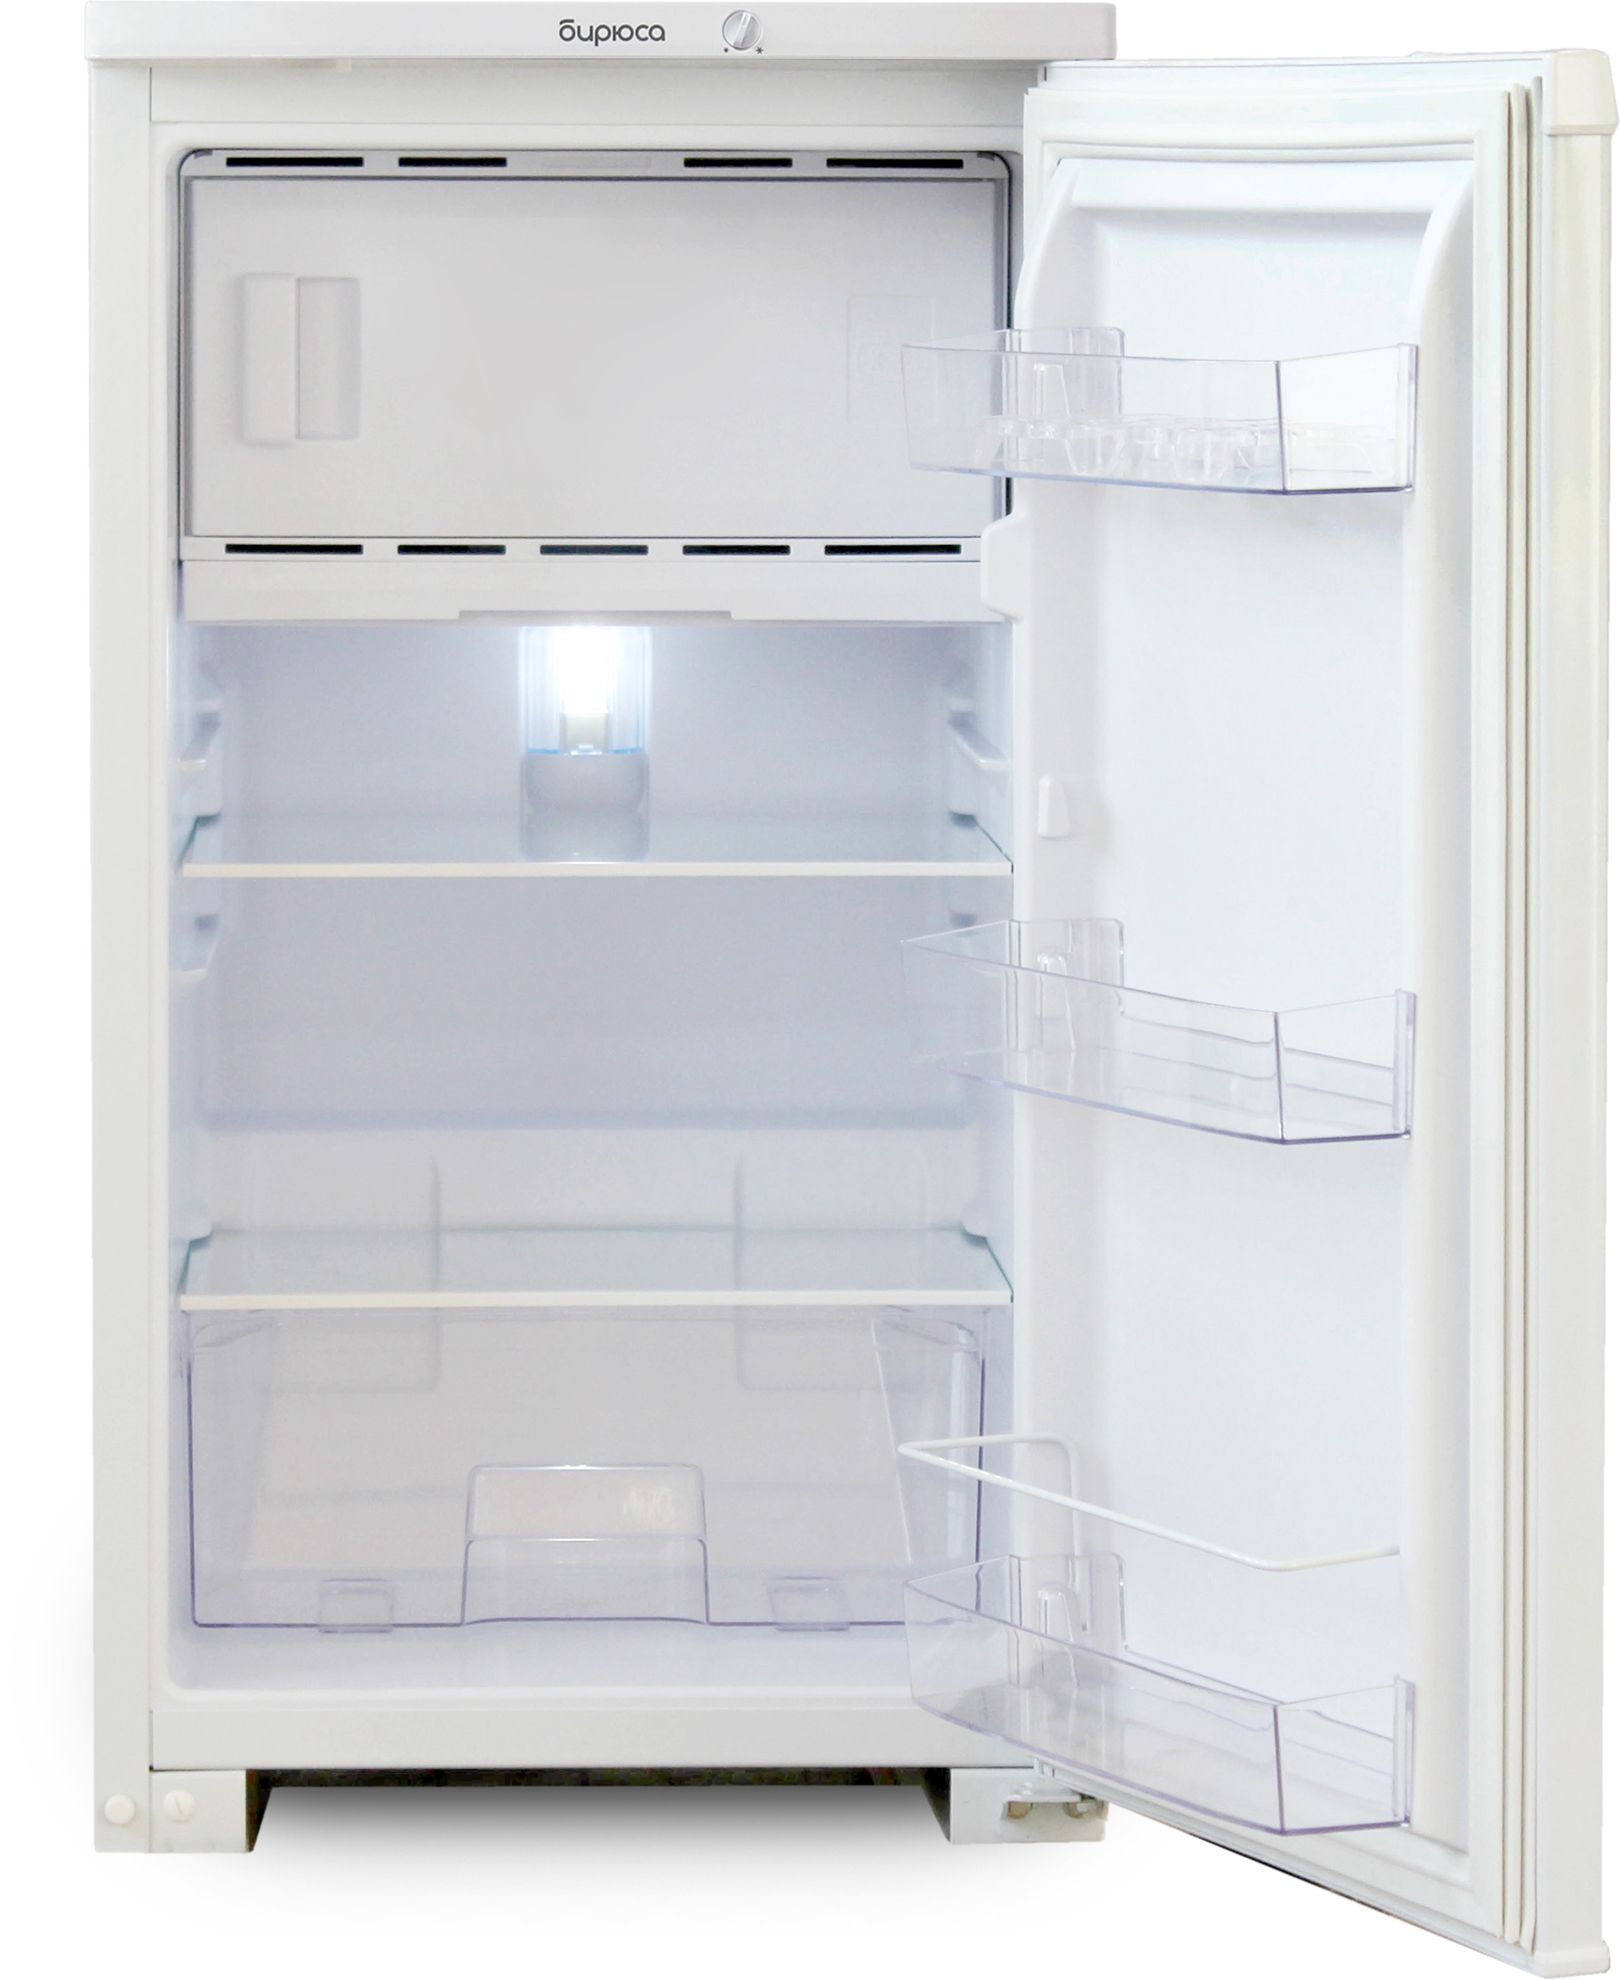 холодильник бирюса 109, купить в Красноярске холодильник бирюса 109,  купить в Красноярске дешево холодильник бирюса 109, купить в Красноярске минимальной цене холодильник бирюса 109